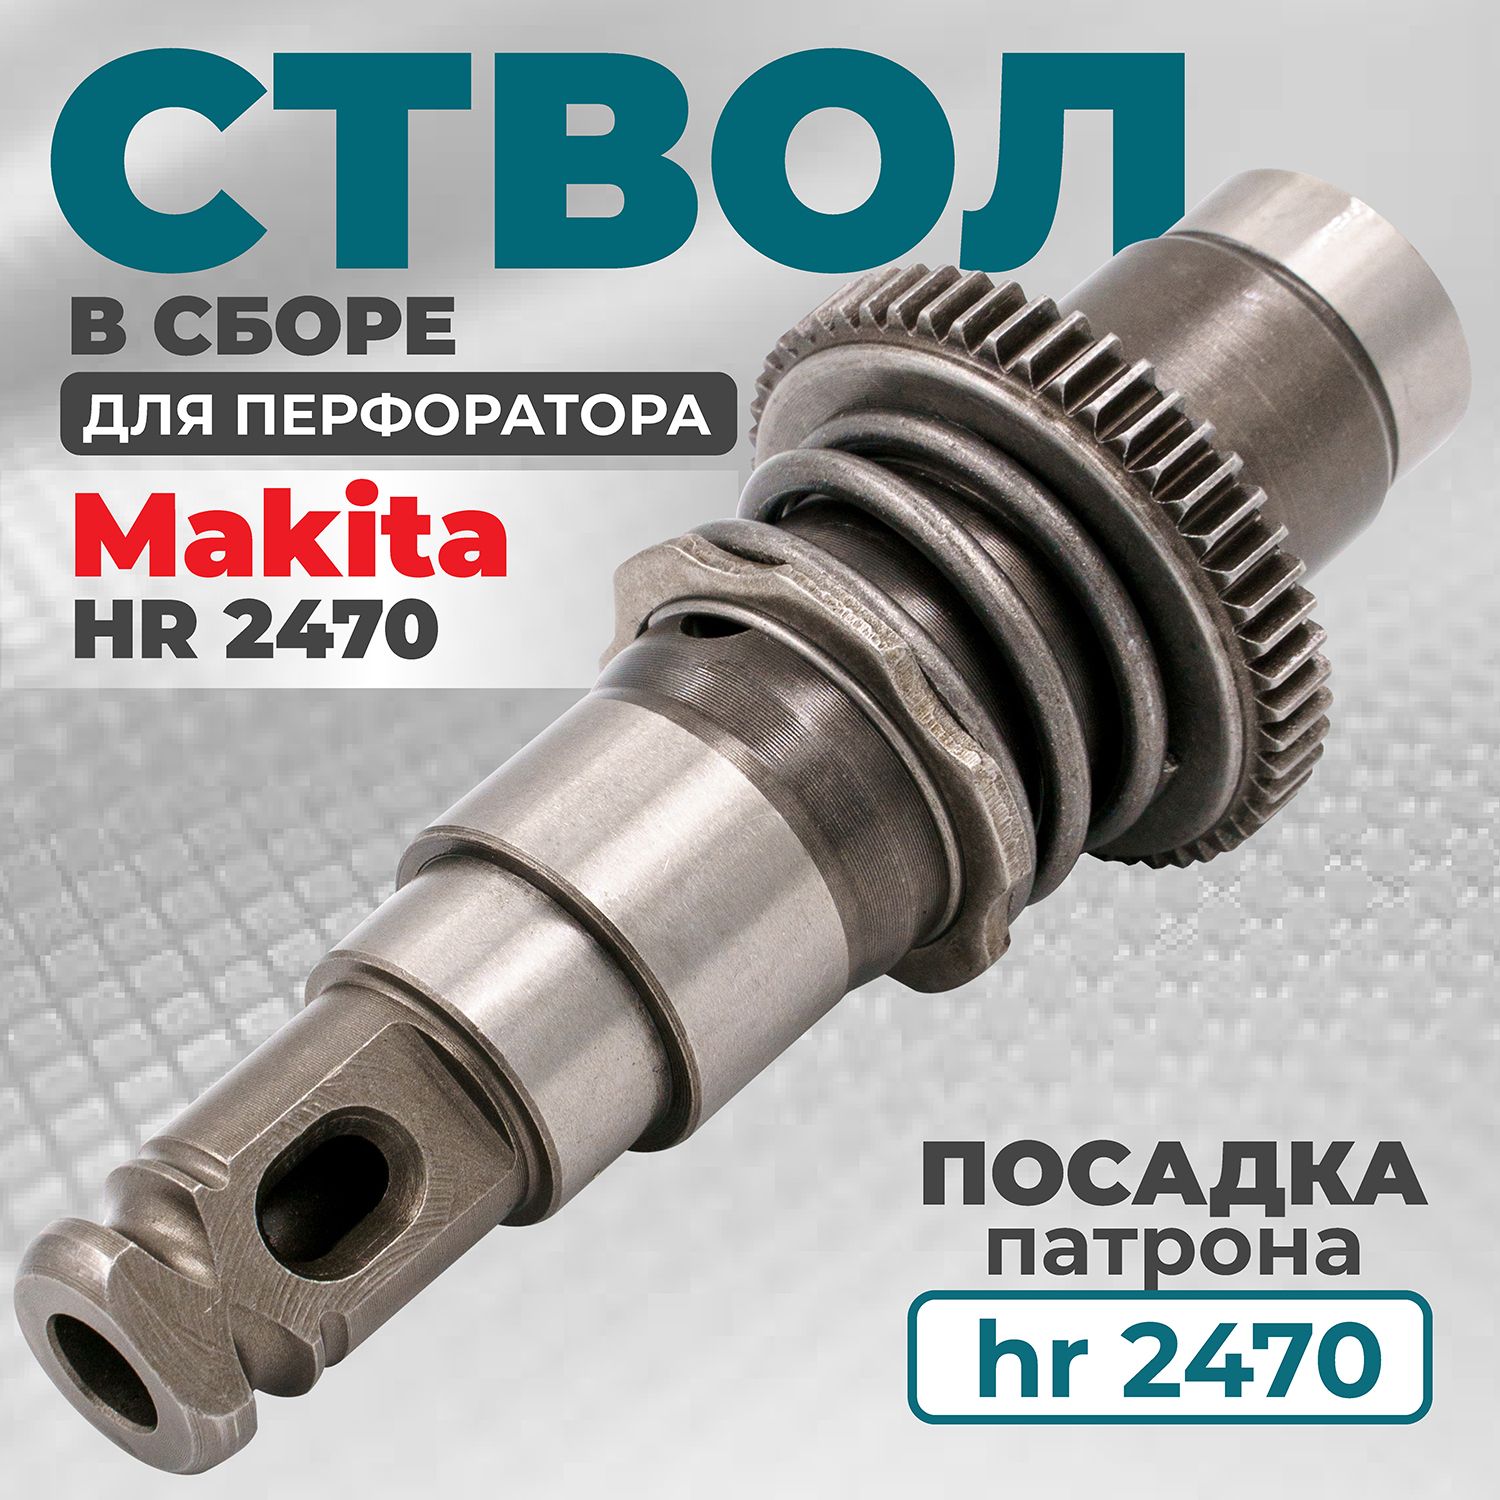 Ремонт — Электрический перфоратор MAKITA HR4501C: ствол, не долбит, бур не вставляется